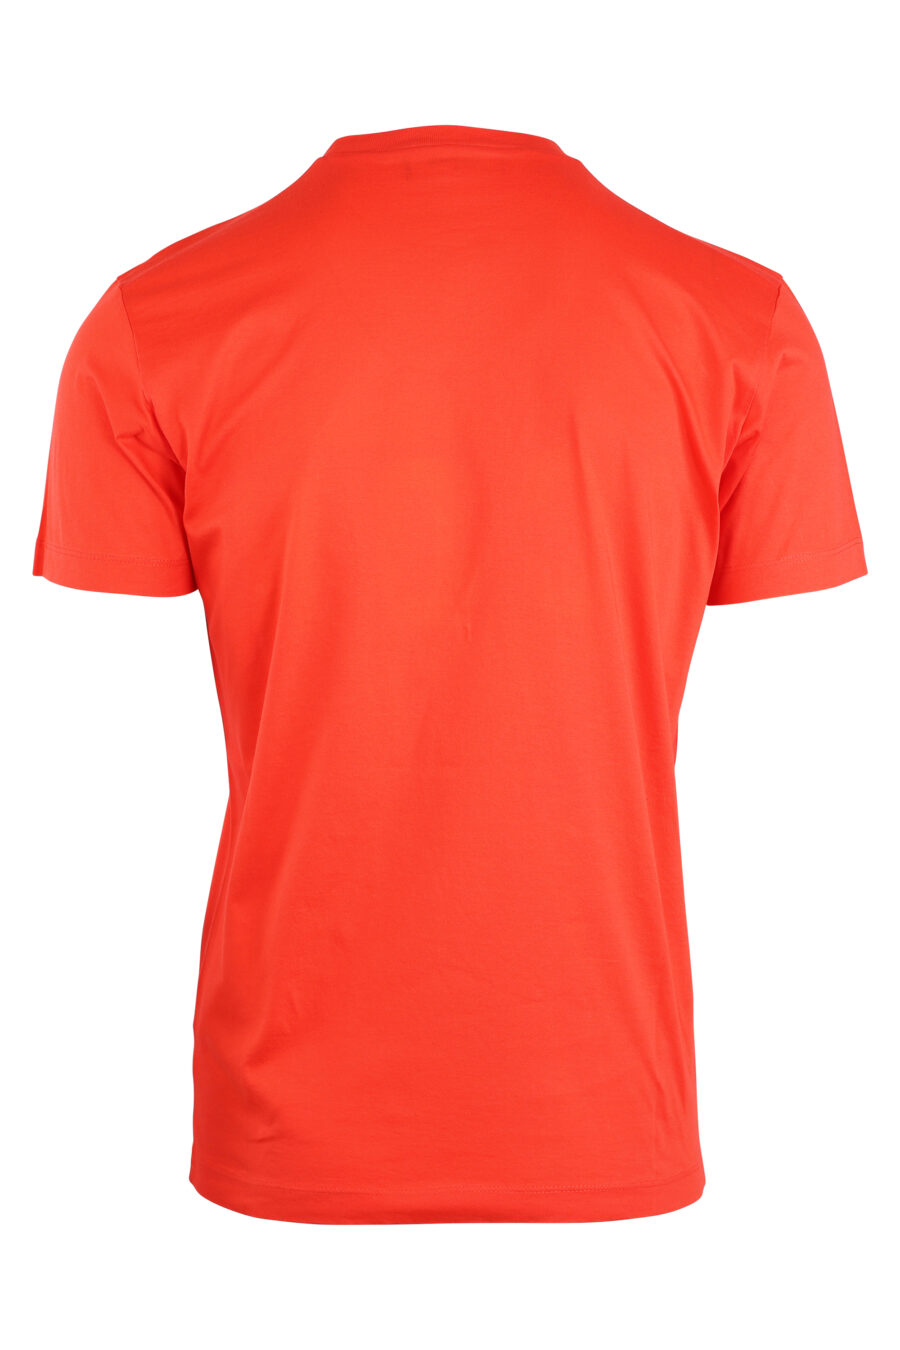 Orange T-shirt with double "icon" logo - IMG 8929